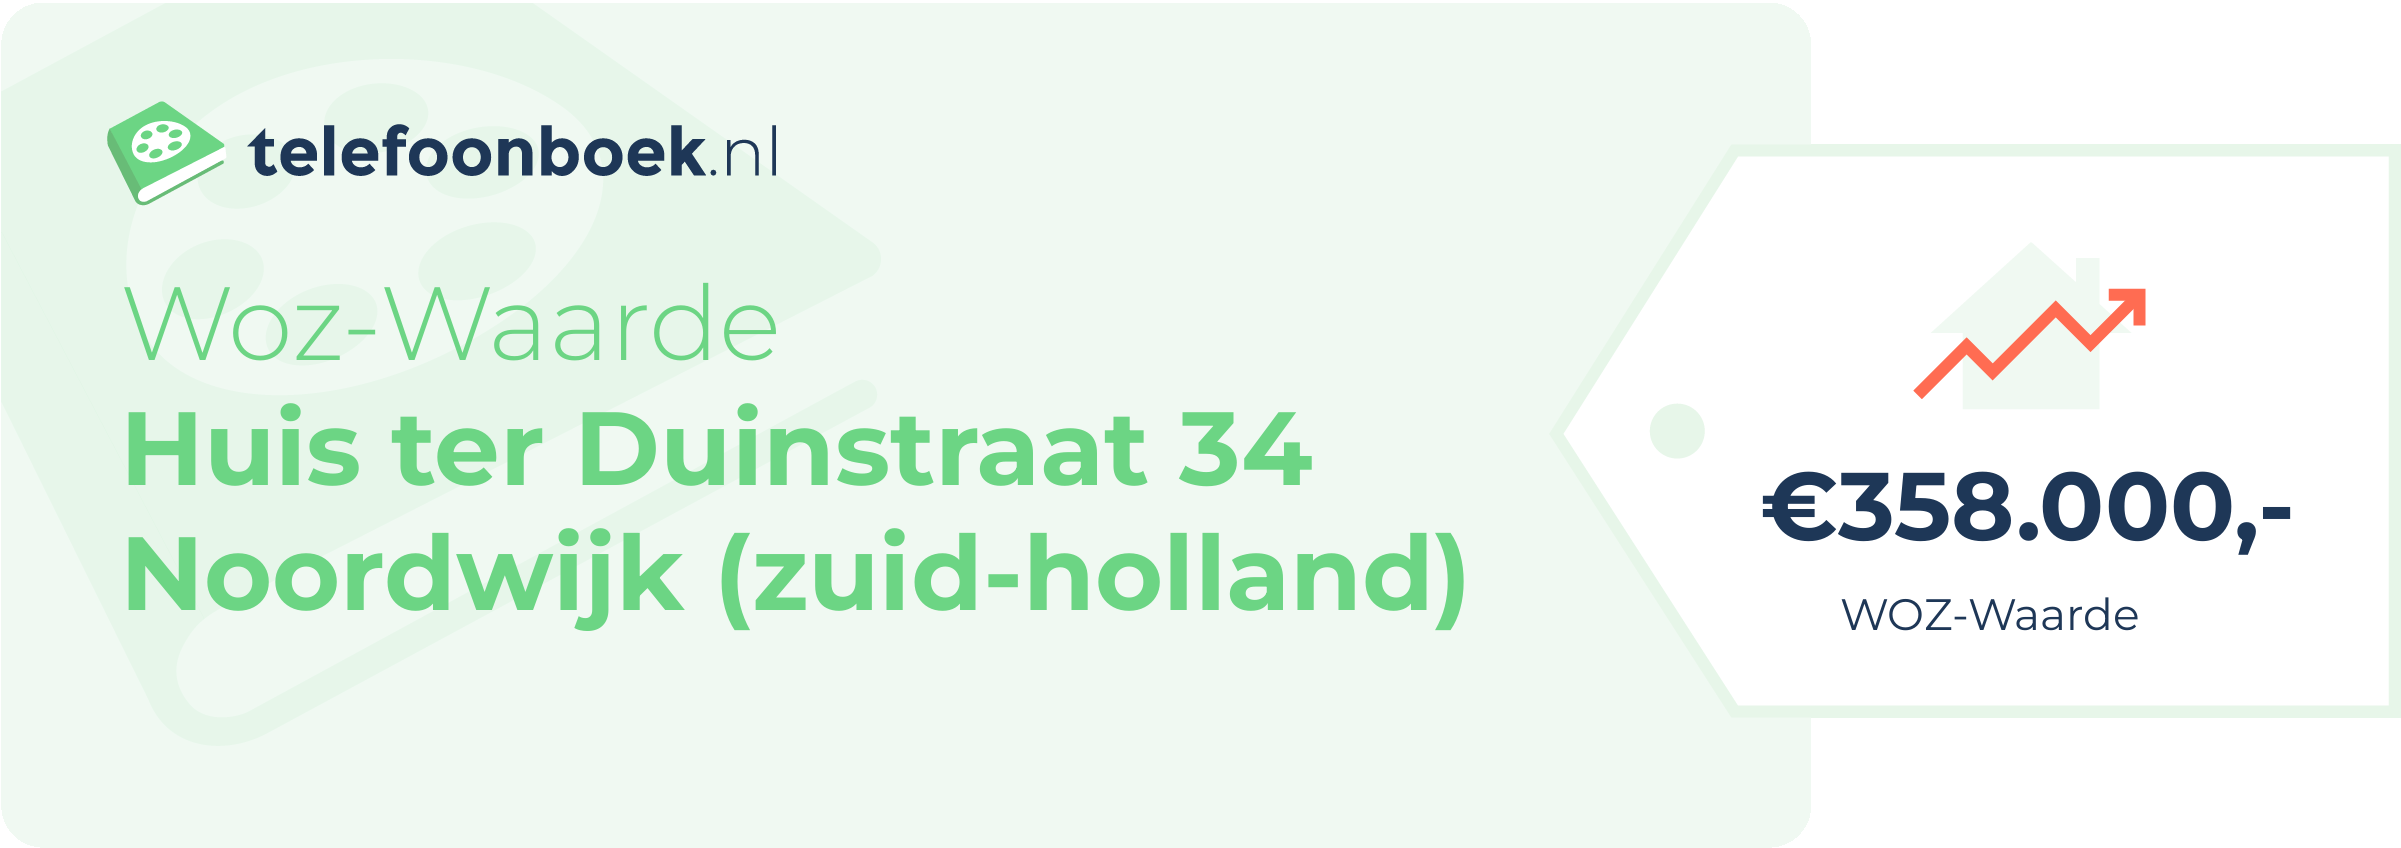 WOZ-waarde Huis Ter Duinstraat 34 Noordwijk (Zuid-Holland)